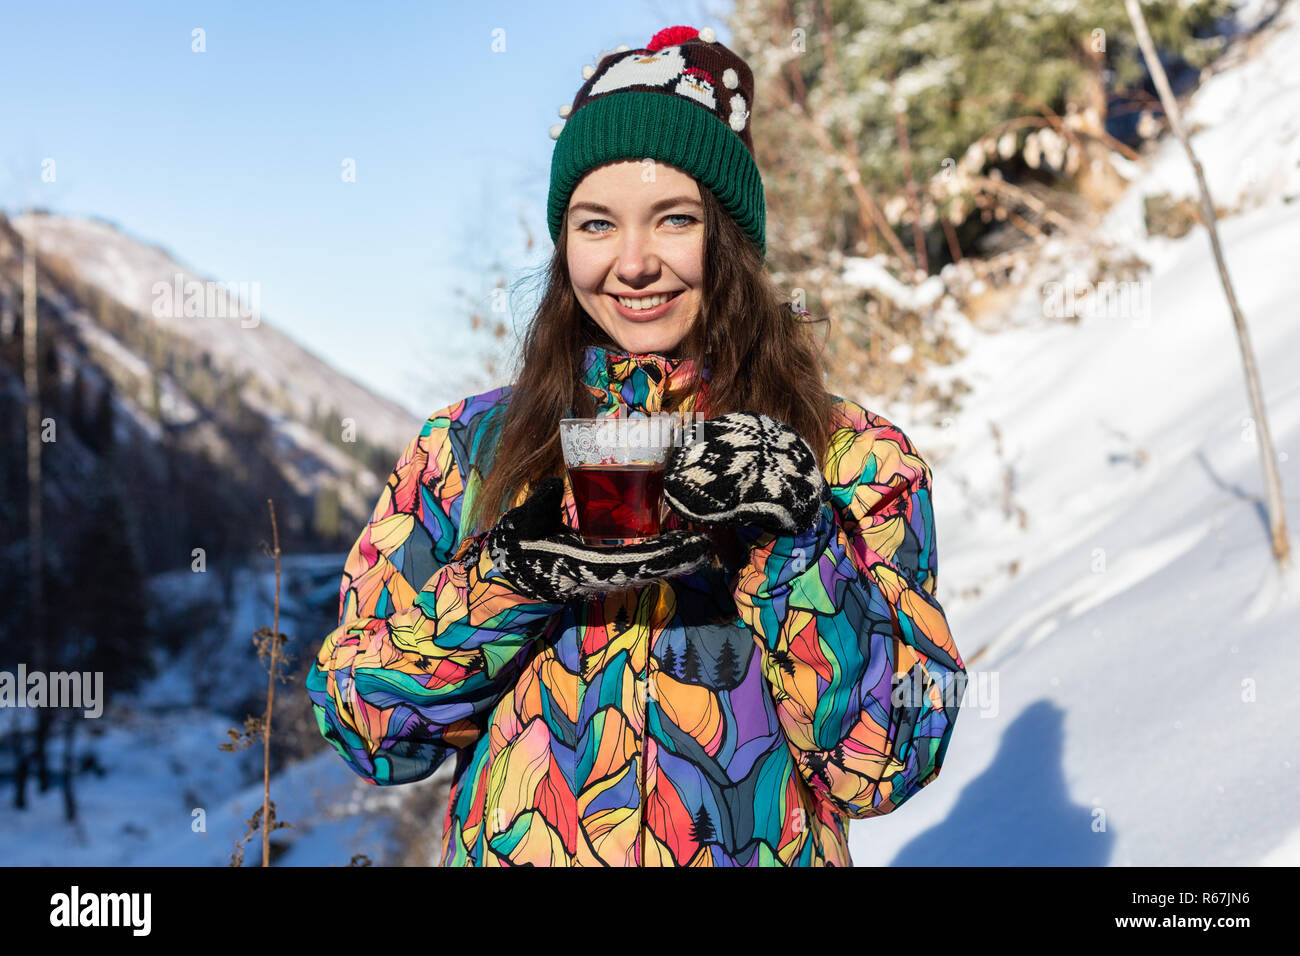 Mädchen genießt den Schnee fällt. Junge Frau in Form gestrickt ist Tee trinken im Wald bei einem Schneefall. Getönten Foto. Stockfoto